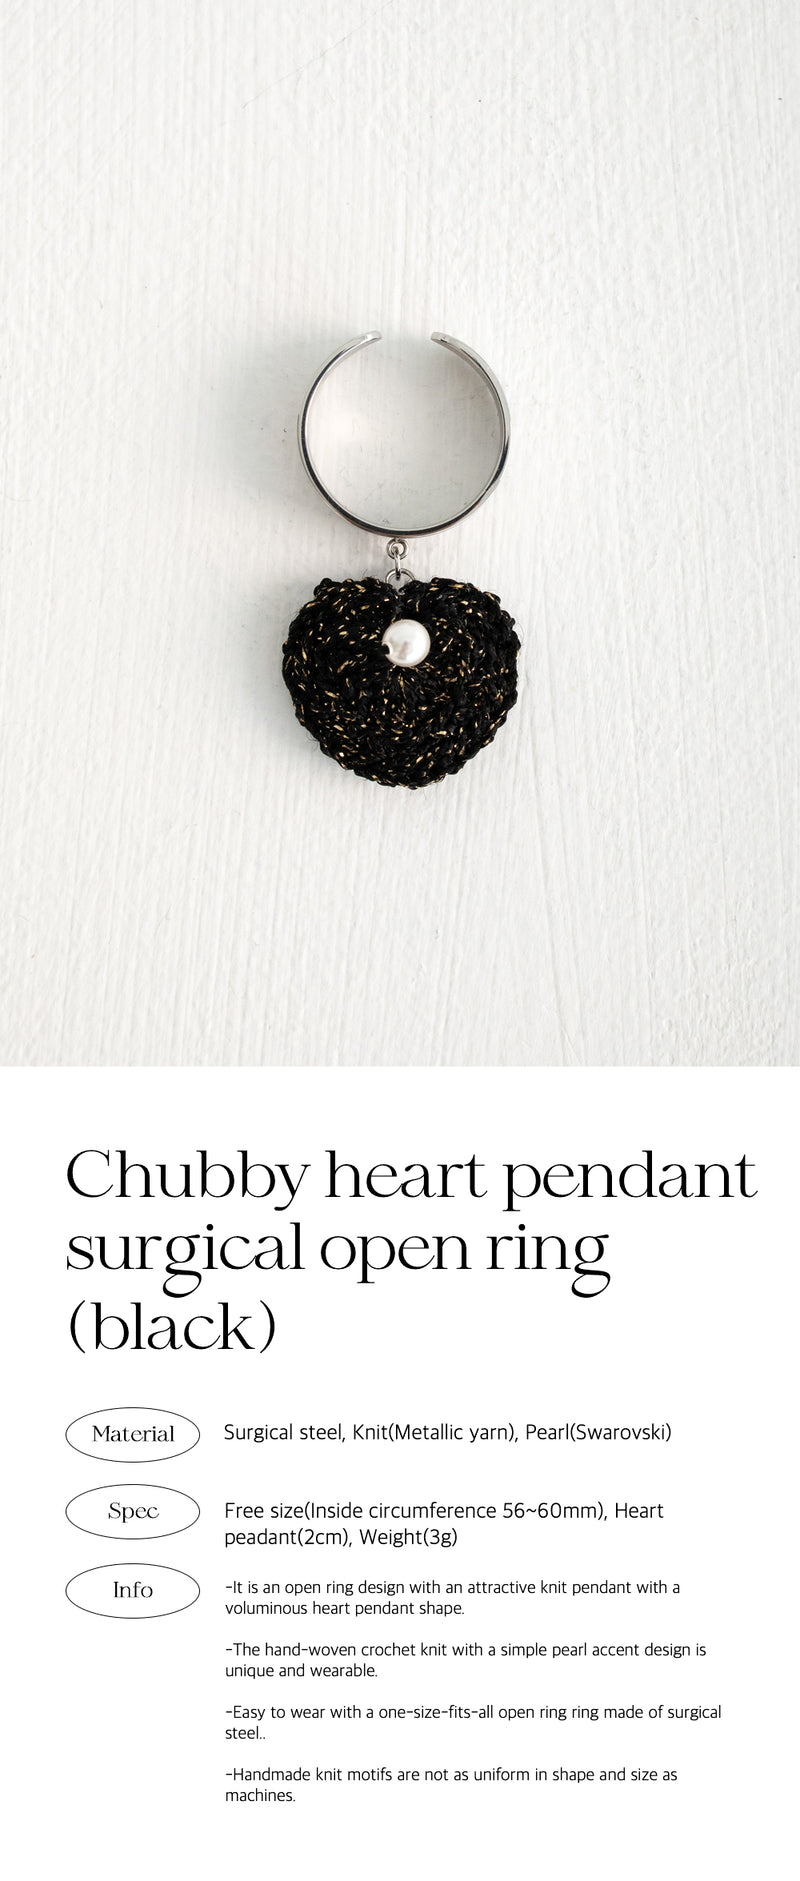 チャビーハートペンダントサージカルオープンリング/Chubby heart pendant surgical open ring (black)